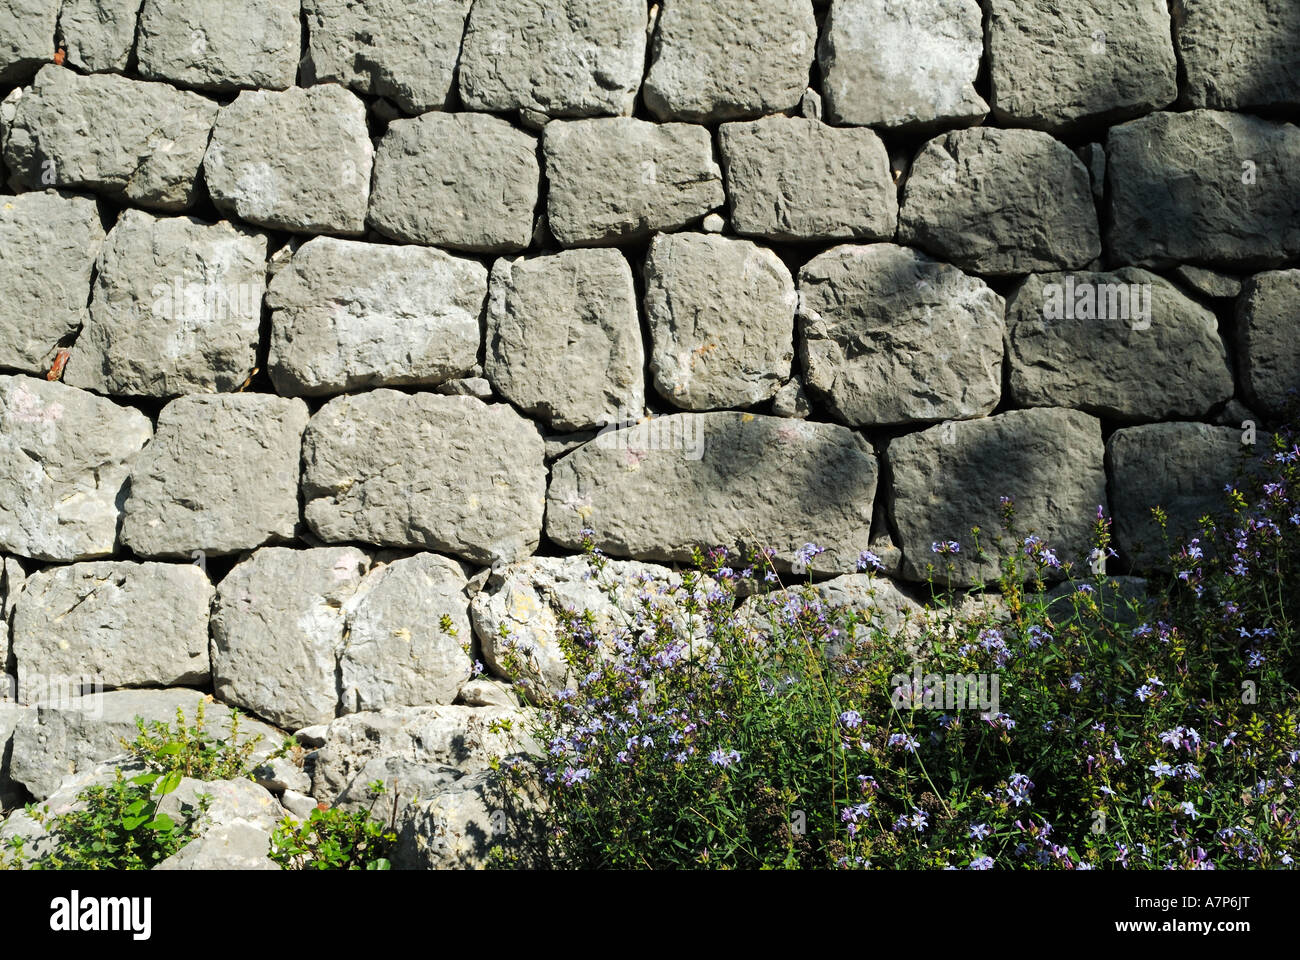 historische Trockenmauer Kotor Montenegro Crna Gora historic drywall Kotor Montenegro Crna Gora Stock Photo